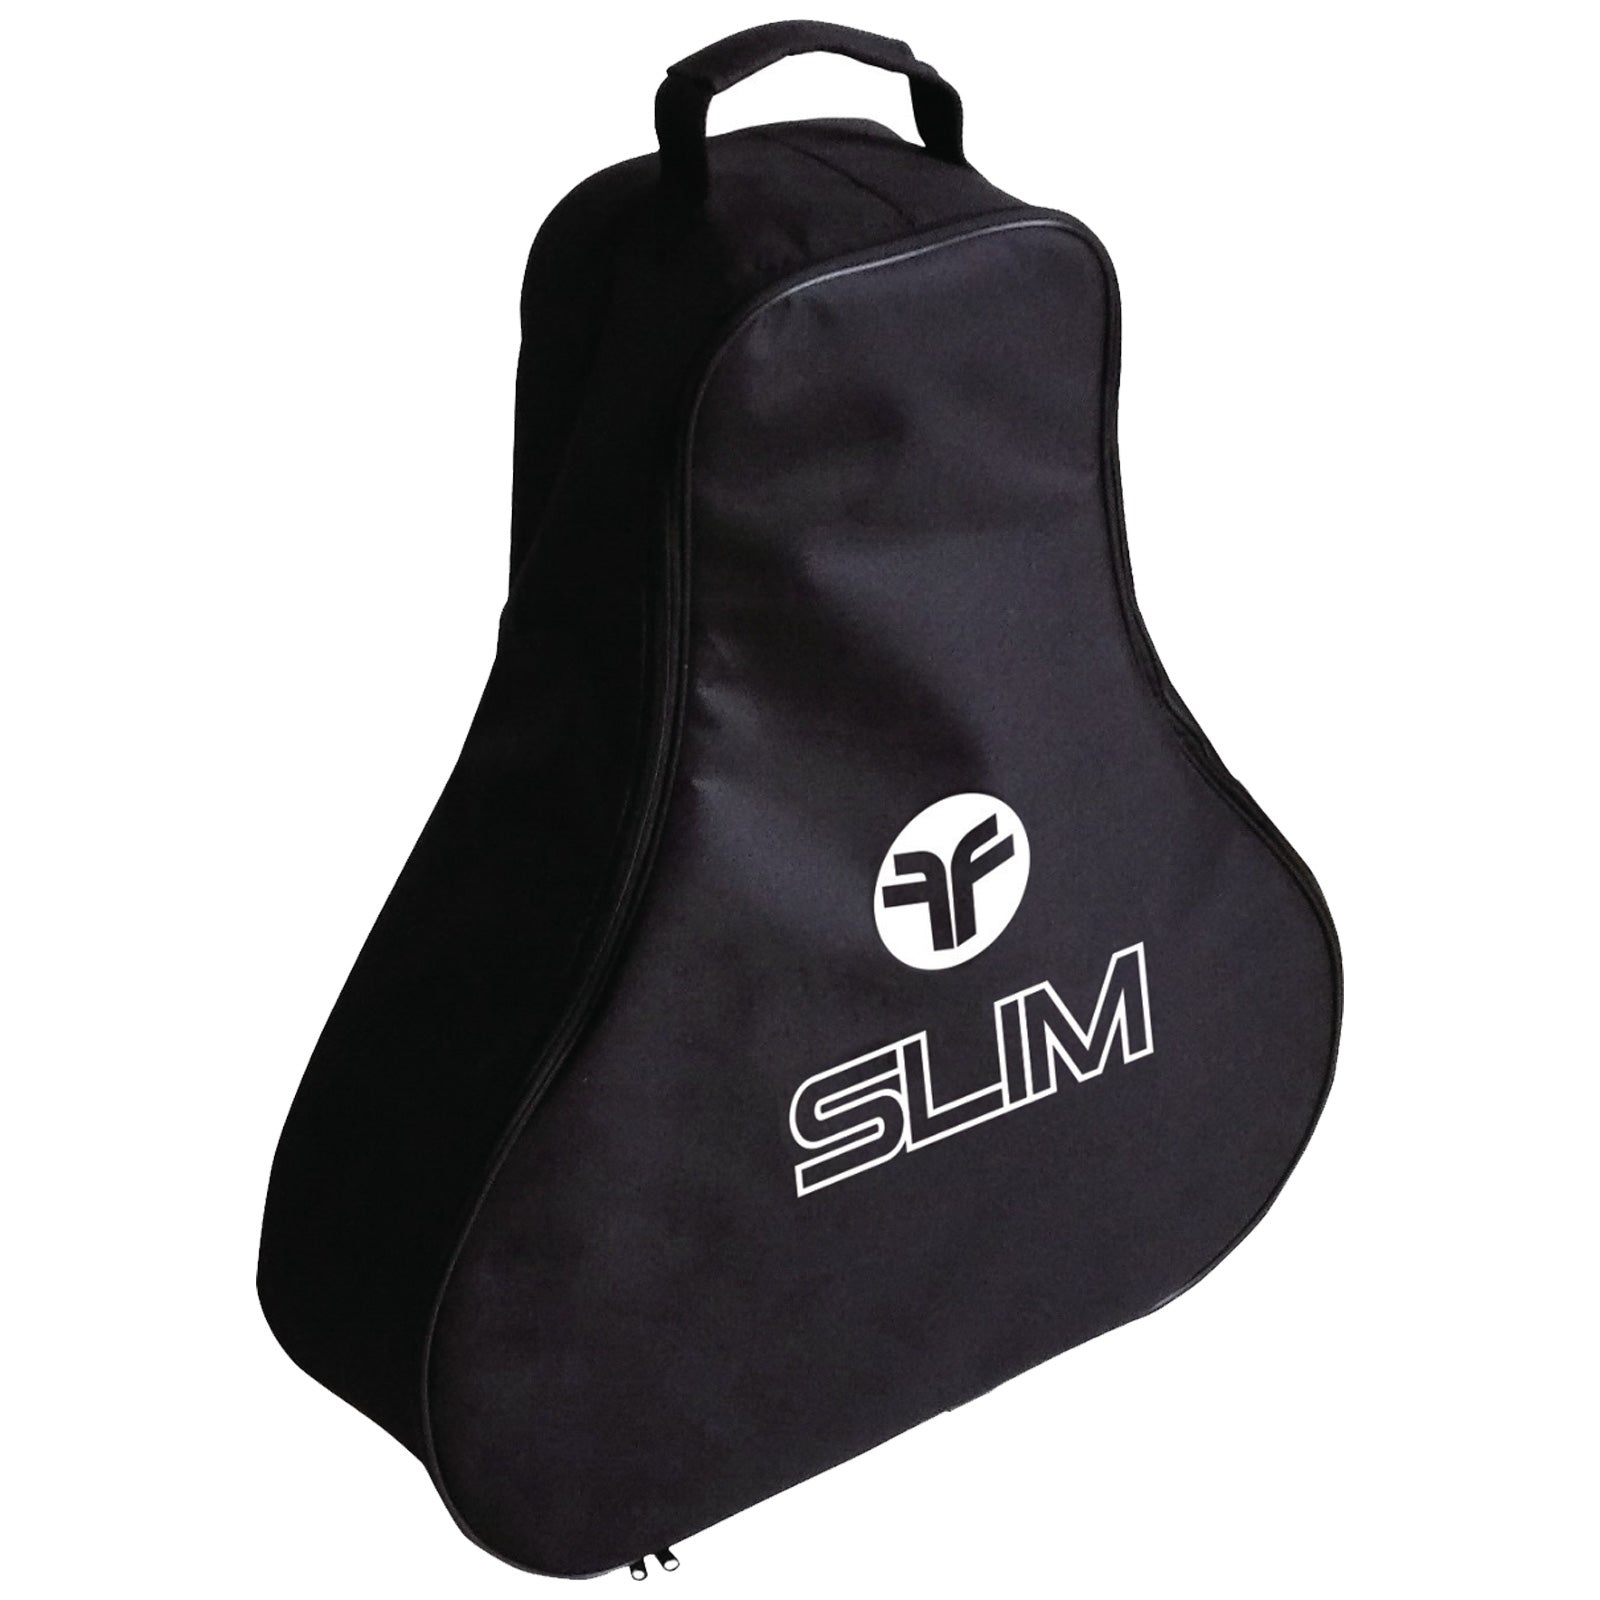 FastFold Slim Trolley Bag